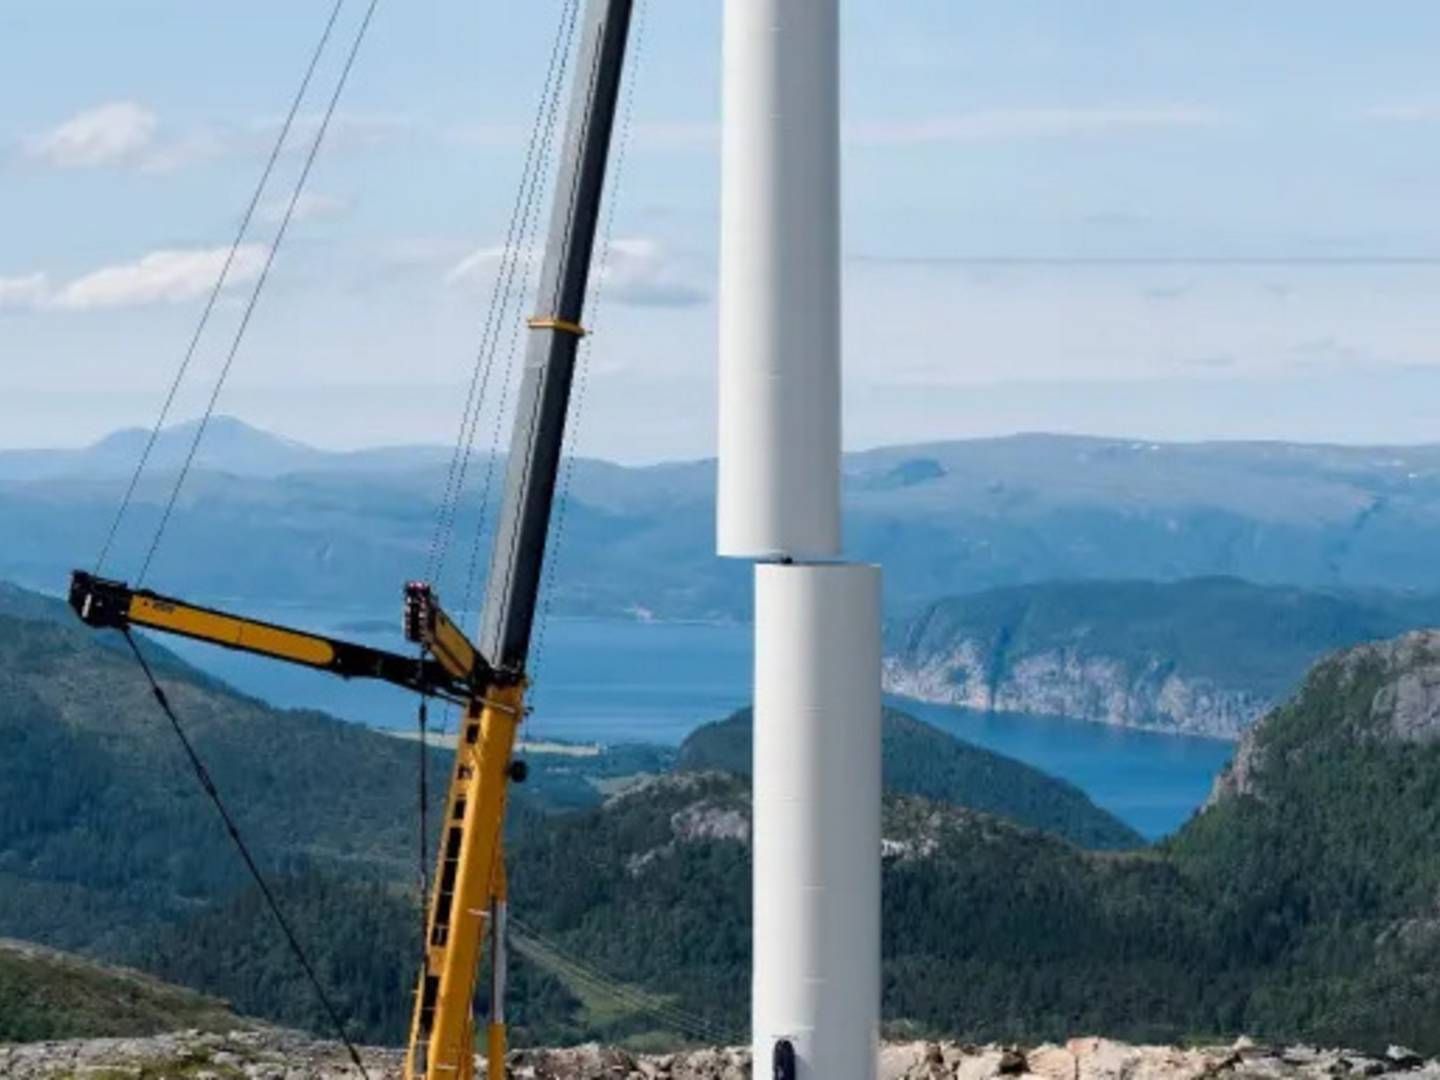 Photo from Geitfjellet two weeks ago, when Fosen Vind's final turbine was installed. | Photo: PR / Fosen Vind